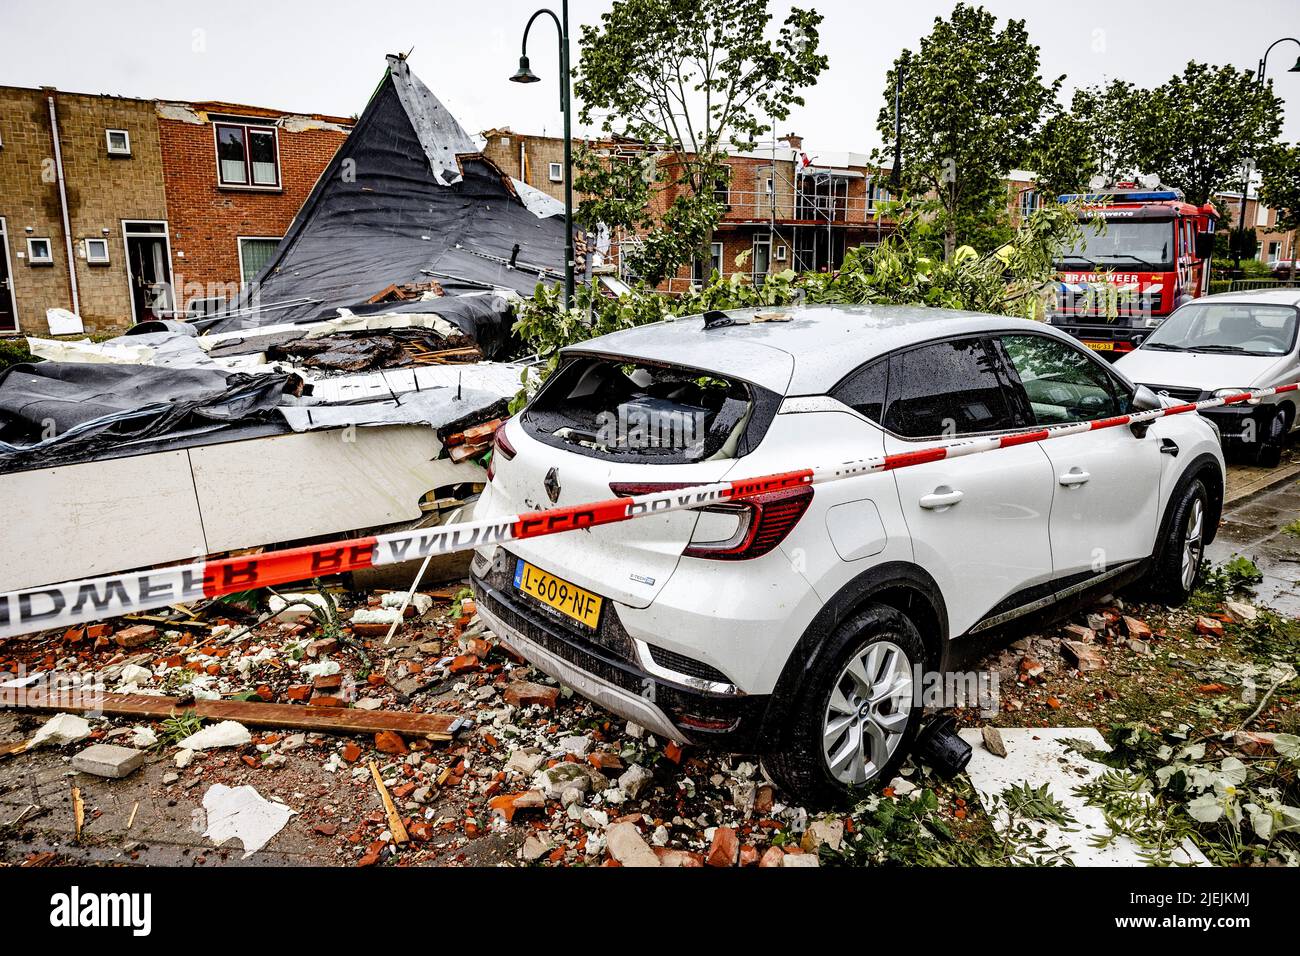 2022-06-27 13:39:04 ZIERIKZEE - dans Zierikzee, une tornade a causé des dommages considérables. Les tuiles de toit ont été soufflées des maisons et les arbres sont tombés. ANP JEFFREY GROENEWEG pays-bas hors - belgique hors Banque D'Images